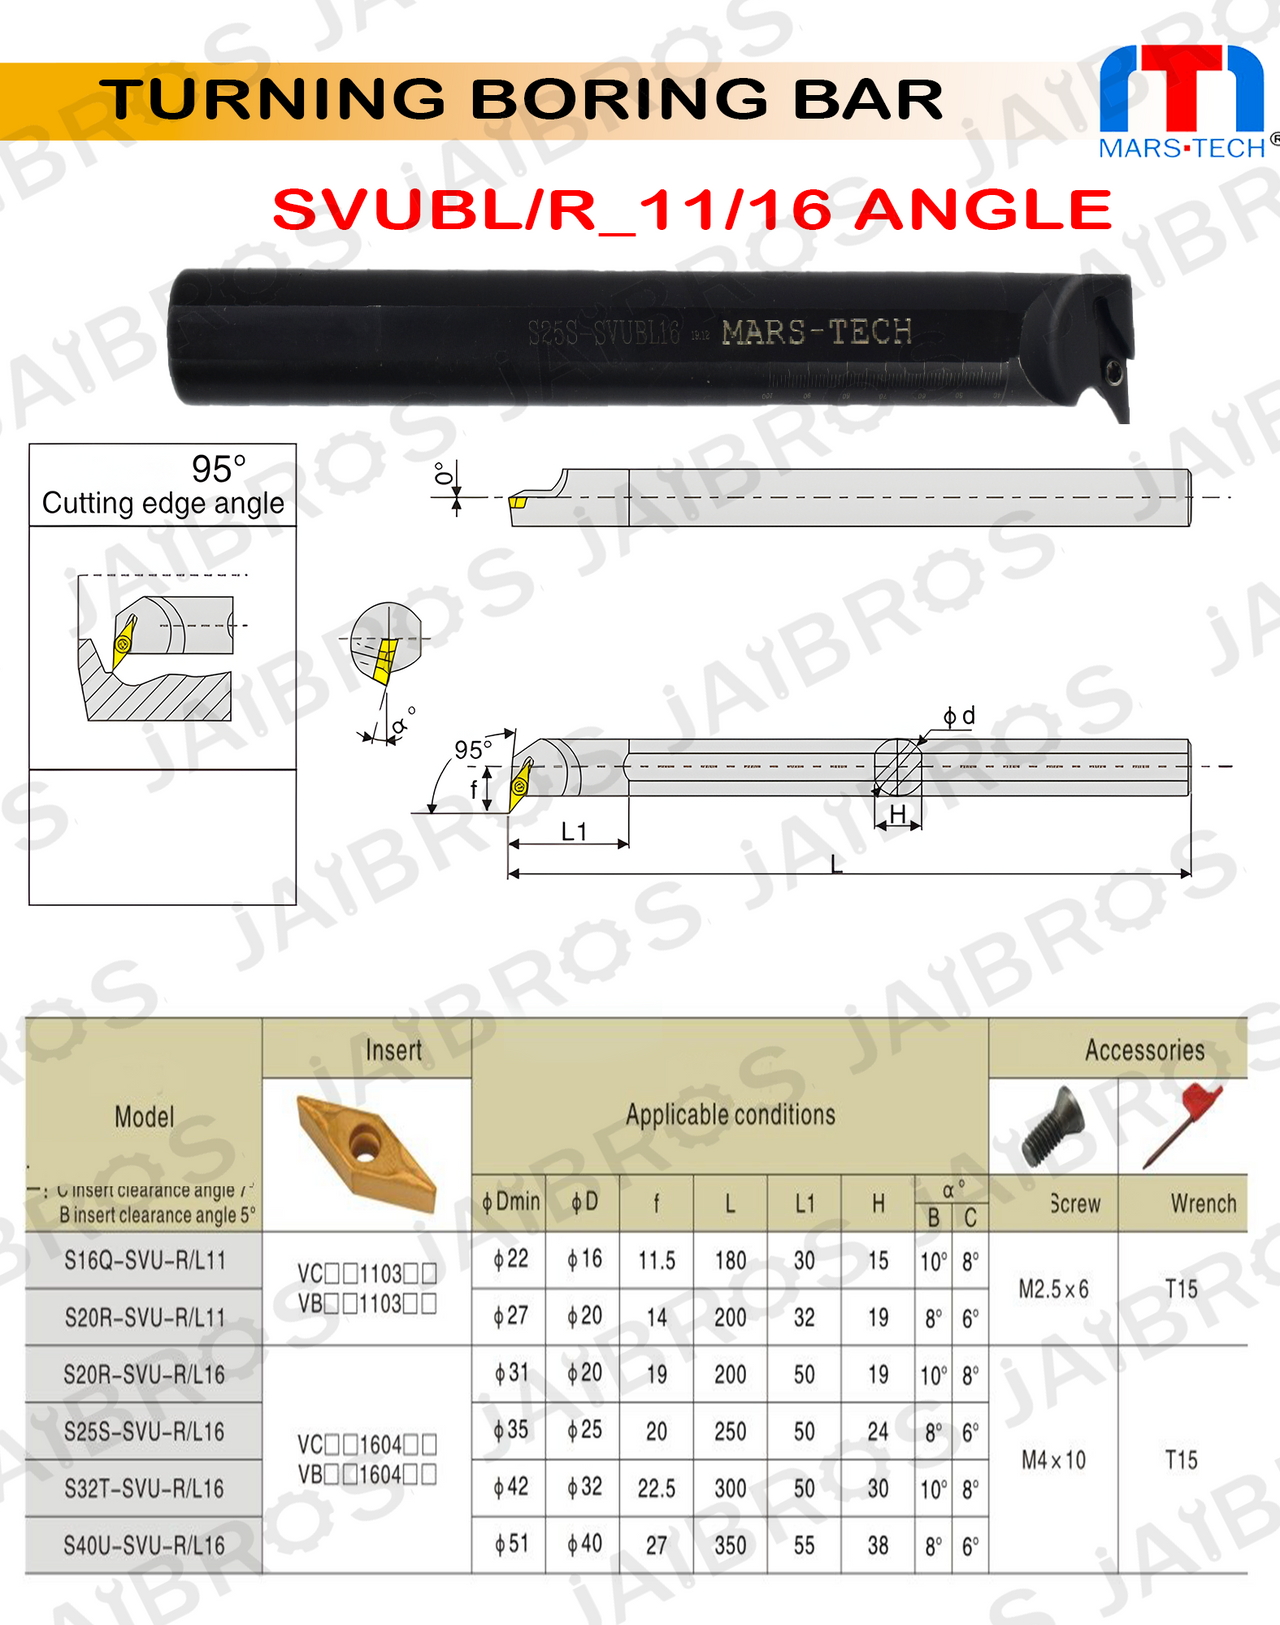 SVUBL/R vbmt1604 Boring bar dia 20/25/32 pack of 1